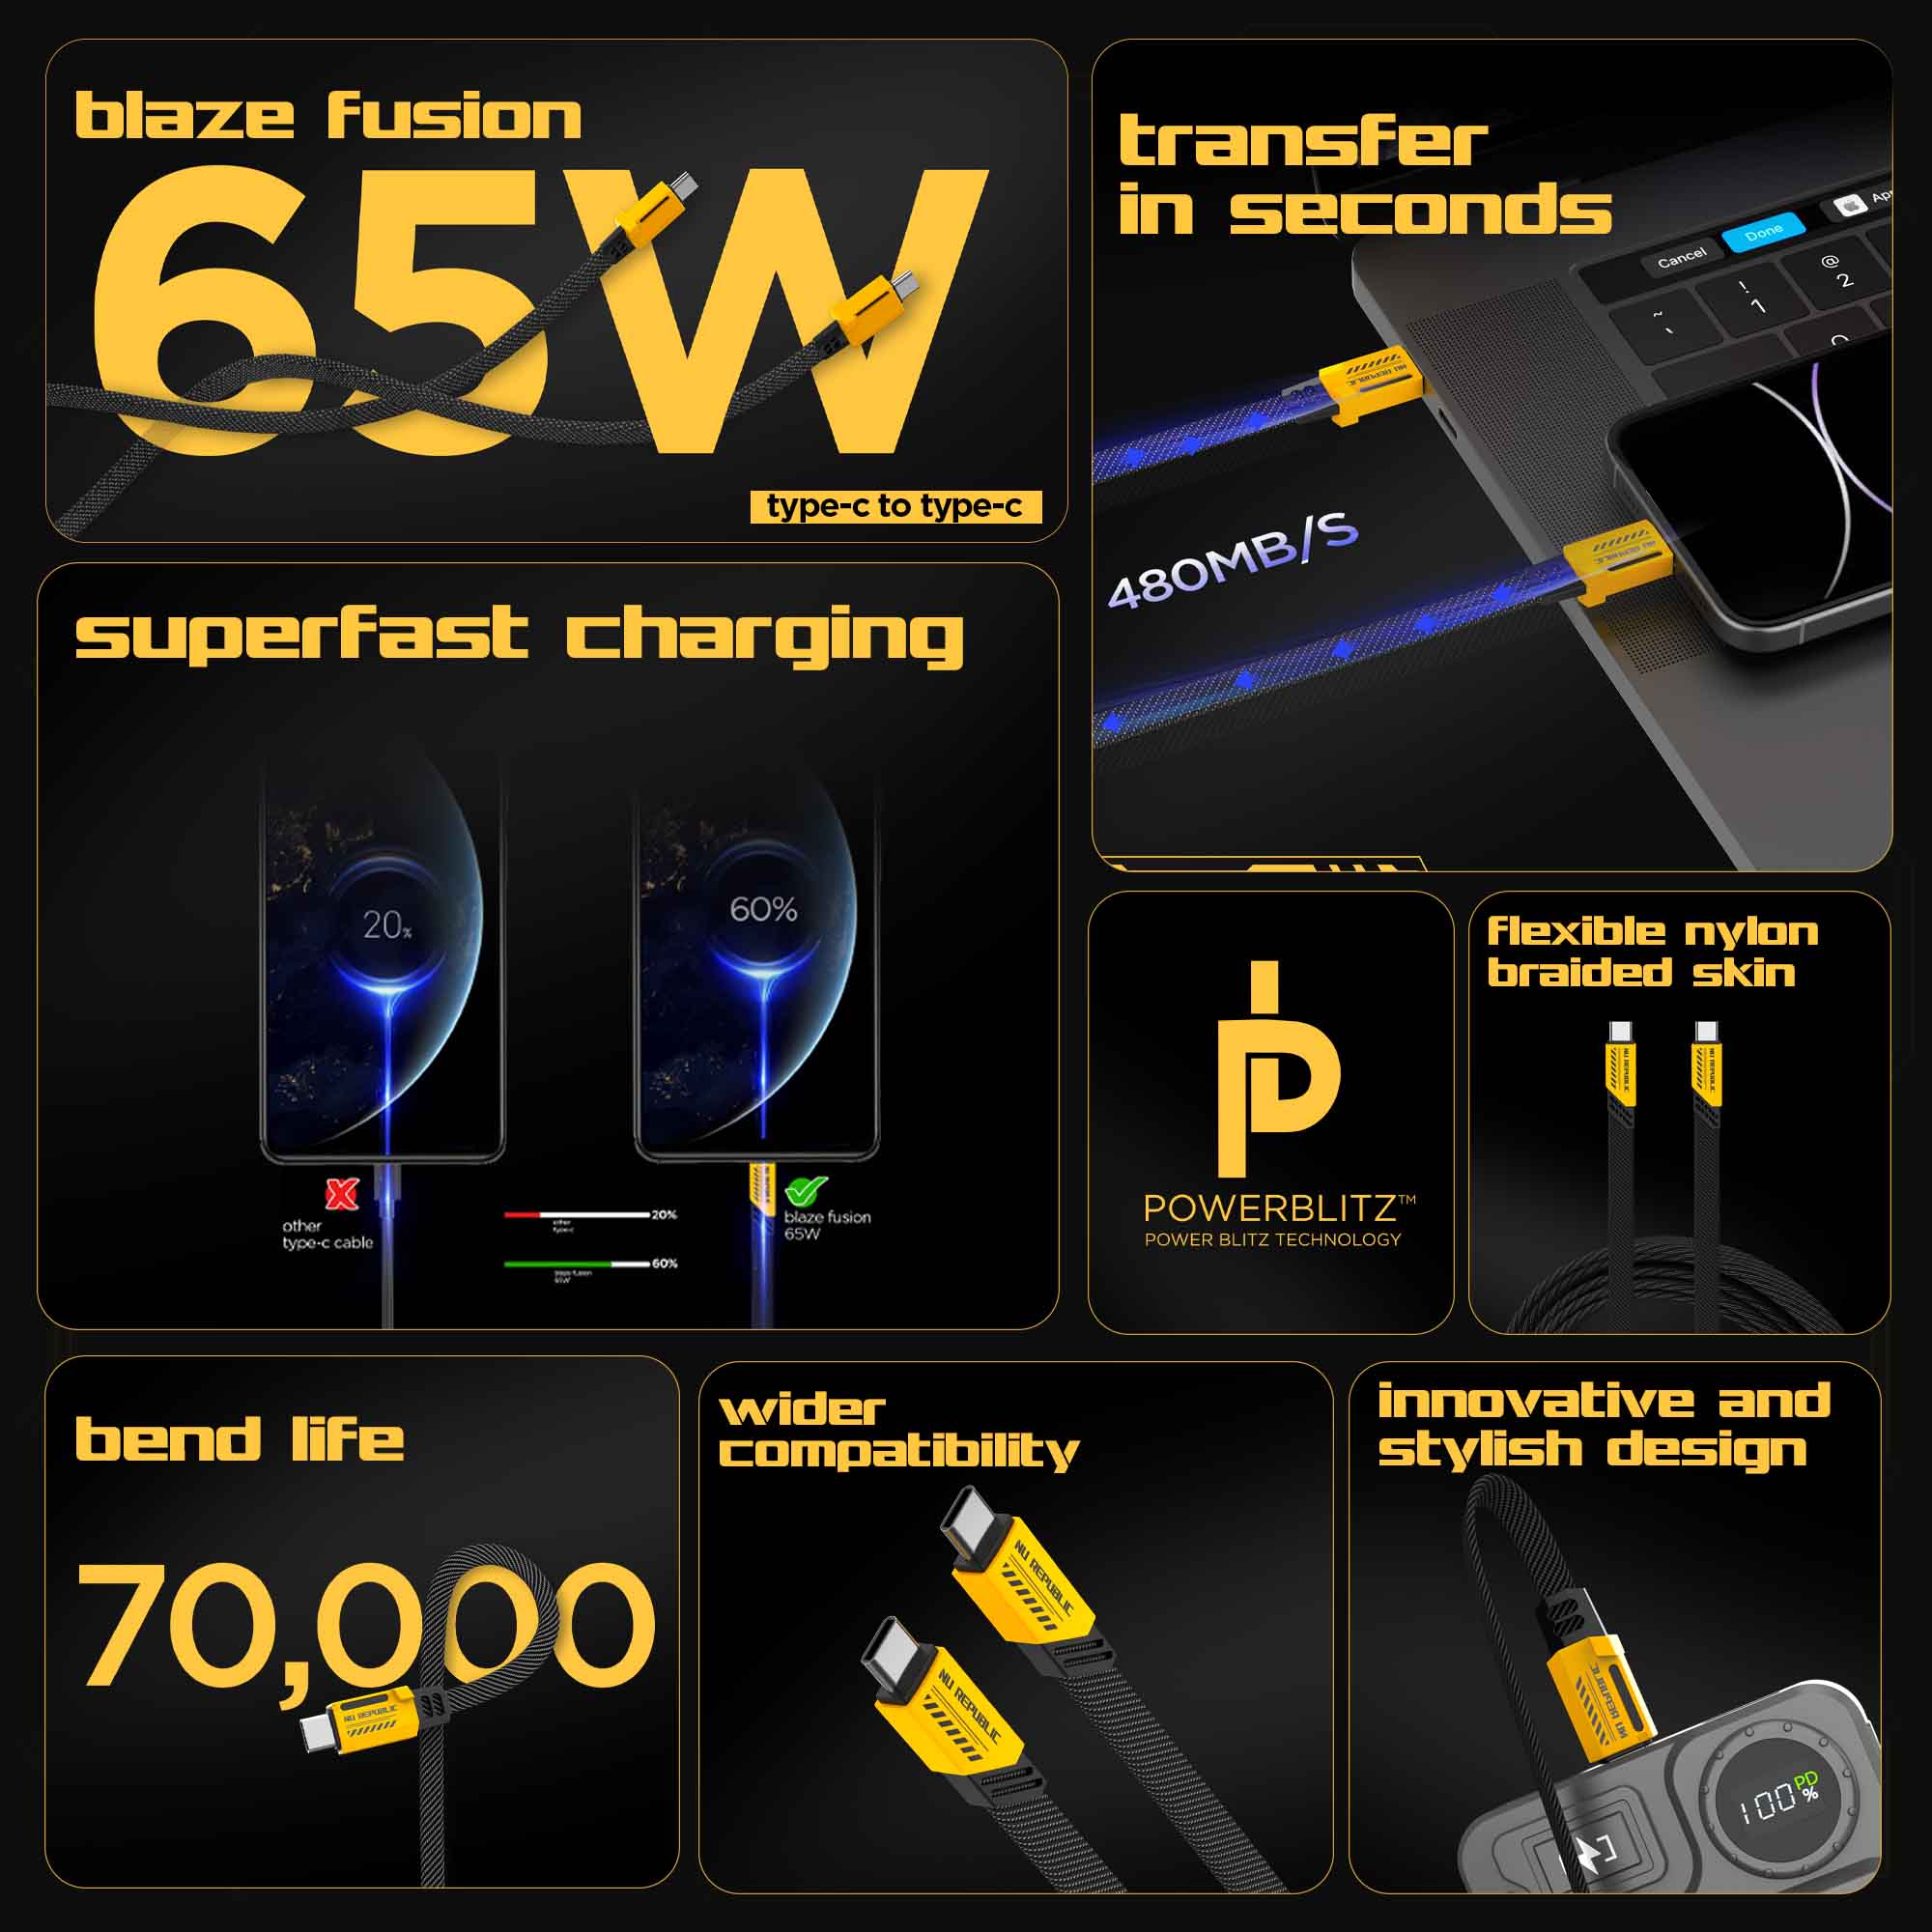 Blaze Fusion 65W Fast Charging Carbon fiber design cable (C-C Type)